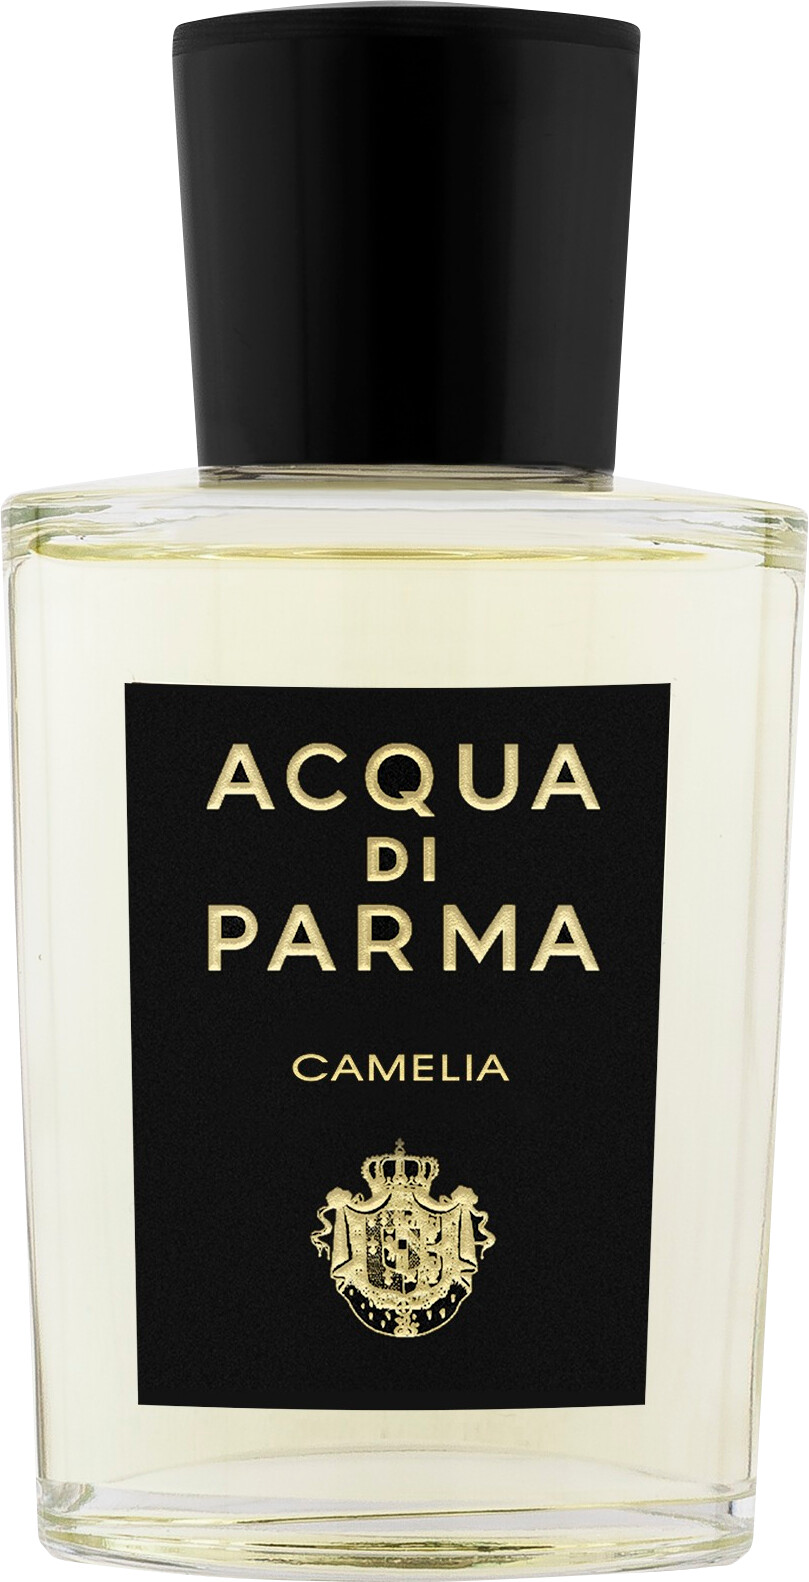 Acqua di Parma Camelia Eau de Parfum Spray 100ml